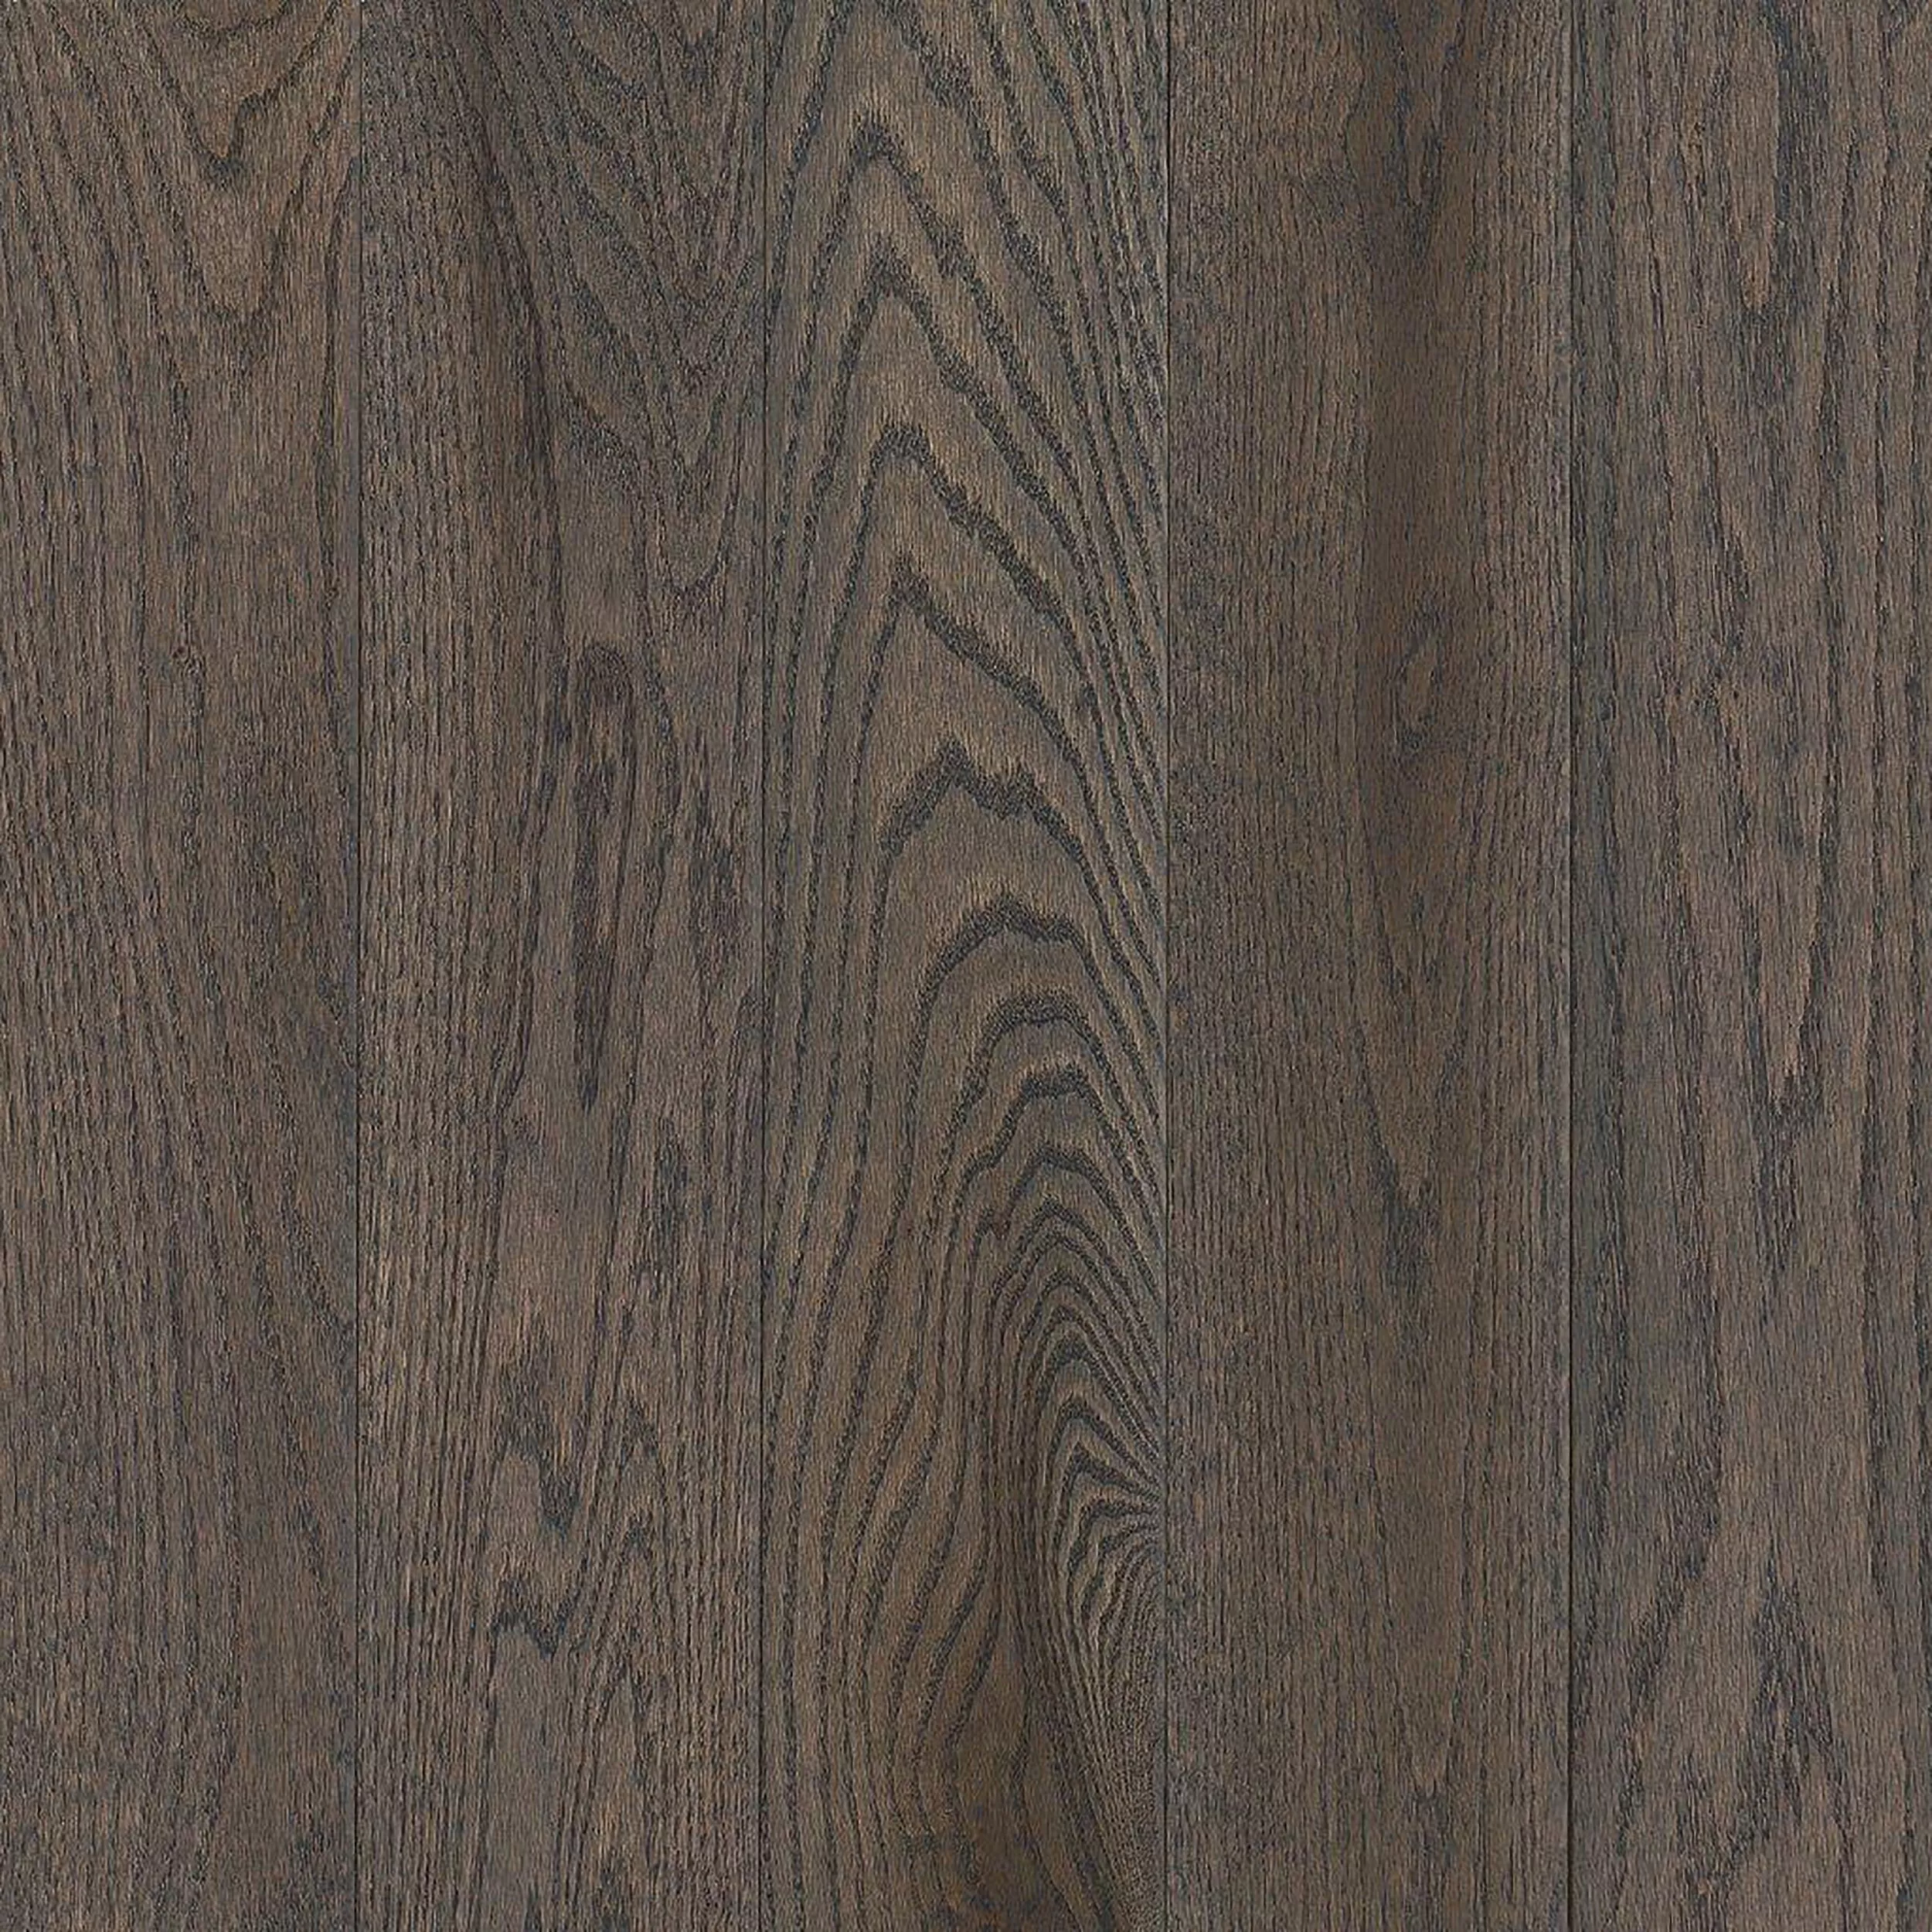 Coastline Oak Smooth Solid Hardwood